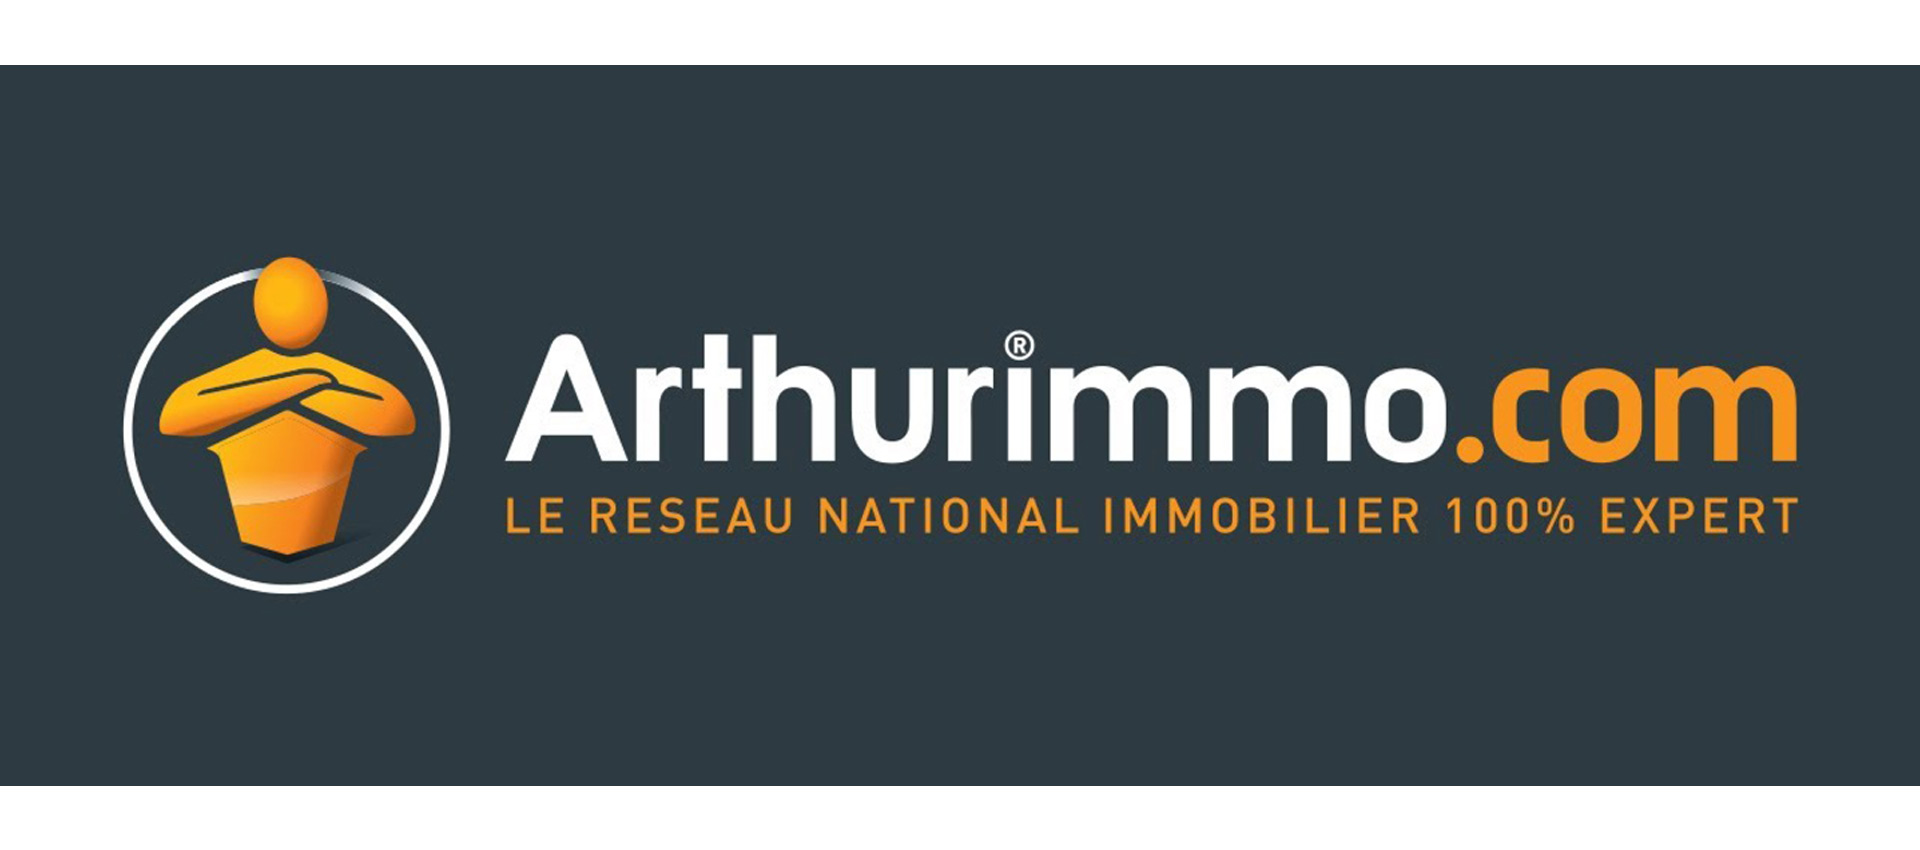 Arthurimmo.com 4